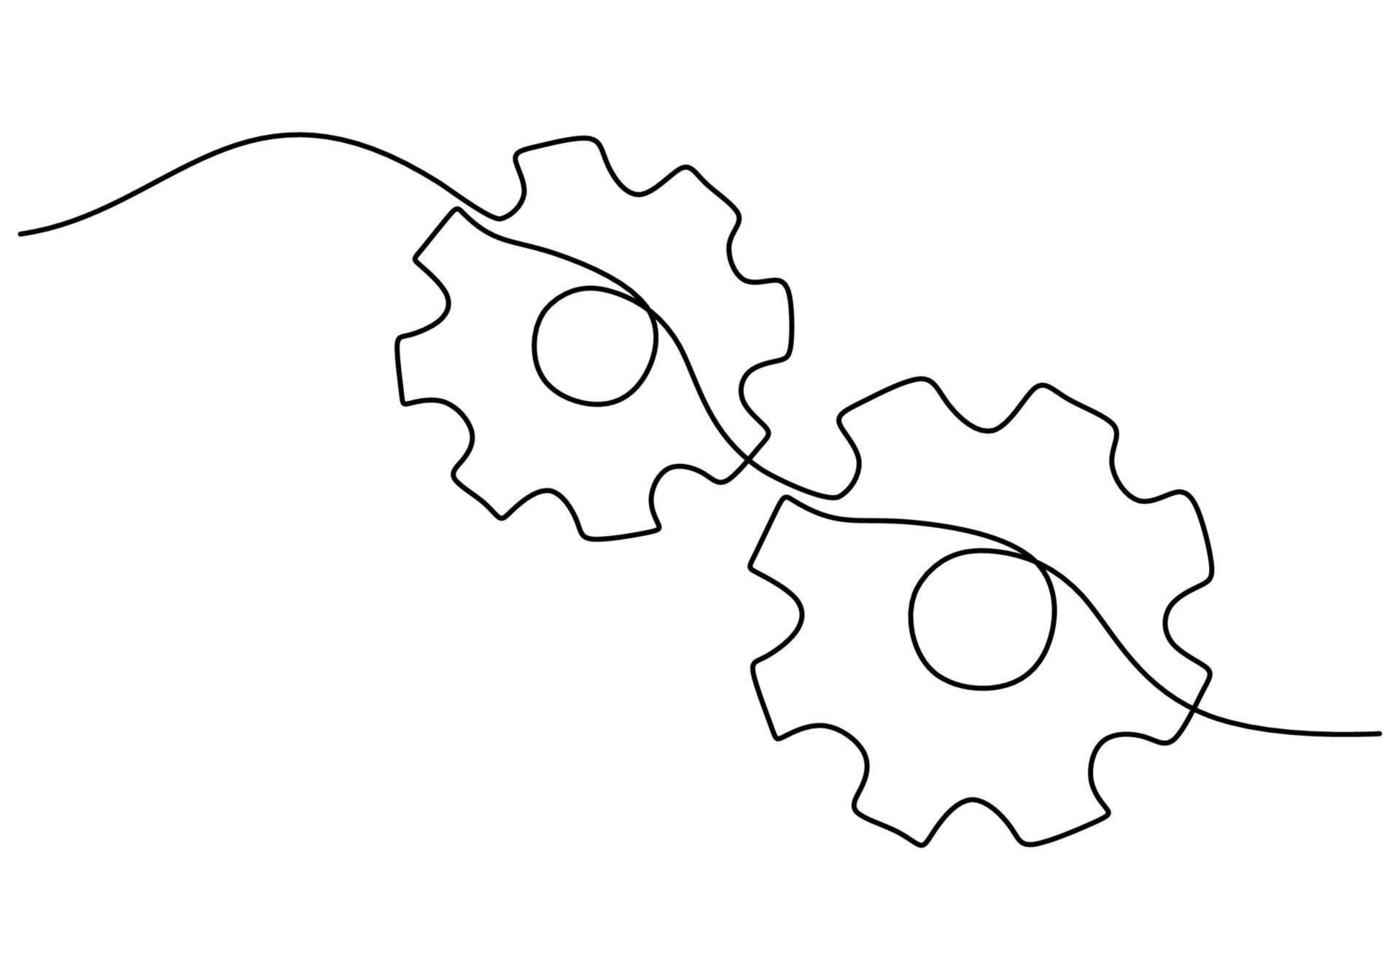 un dibujo continuo a mano de una sola línea de dos engranajes vector